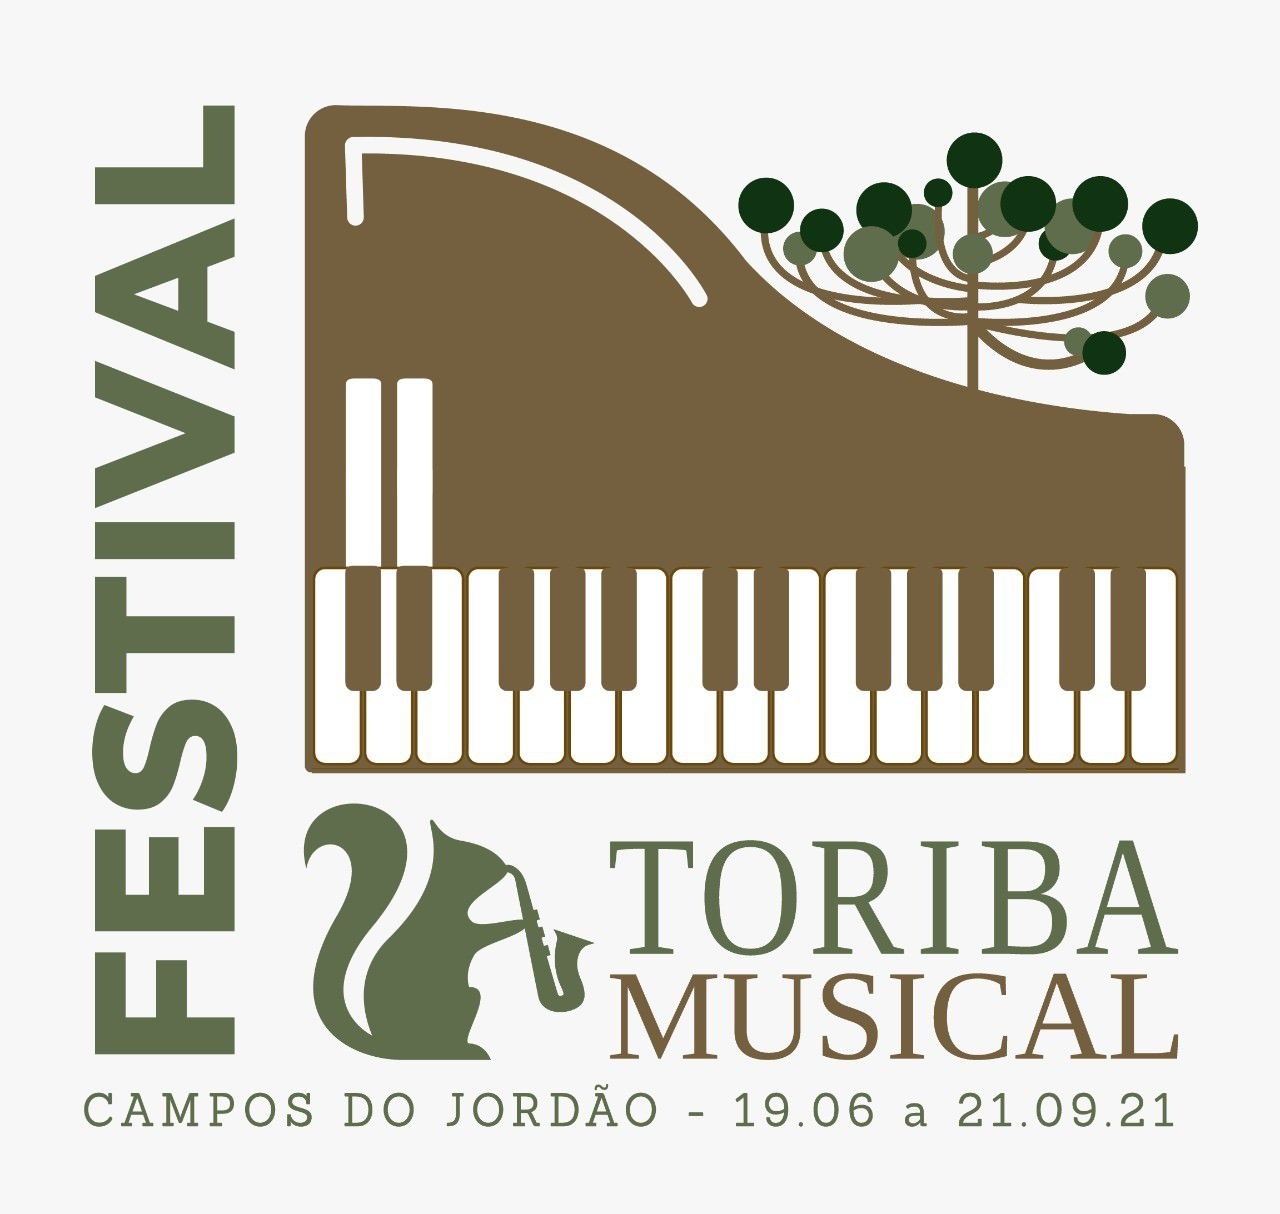 Φεστιβάλ μουσικής Toriba 2021, σύντομα. Αποκάλυψη.